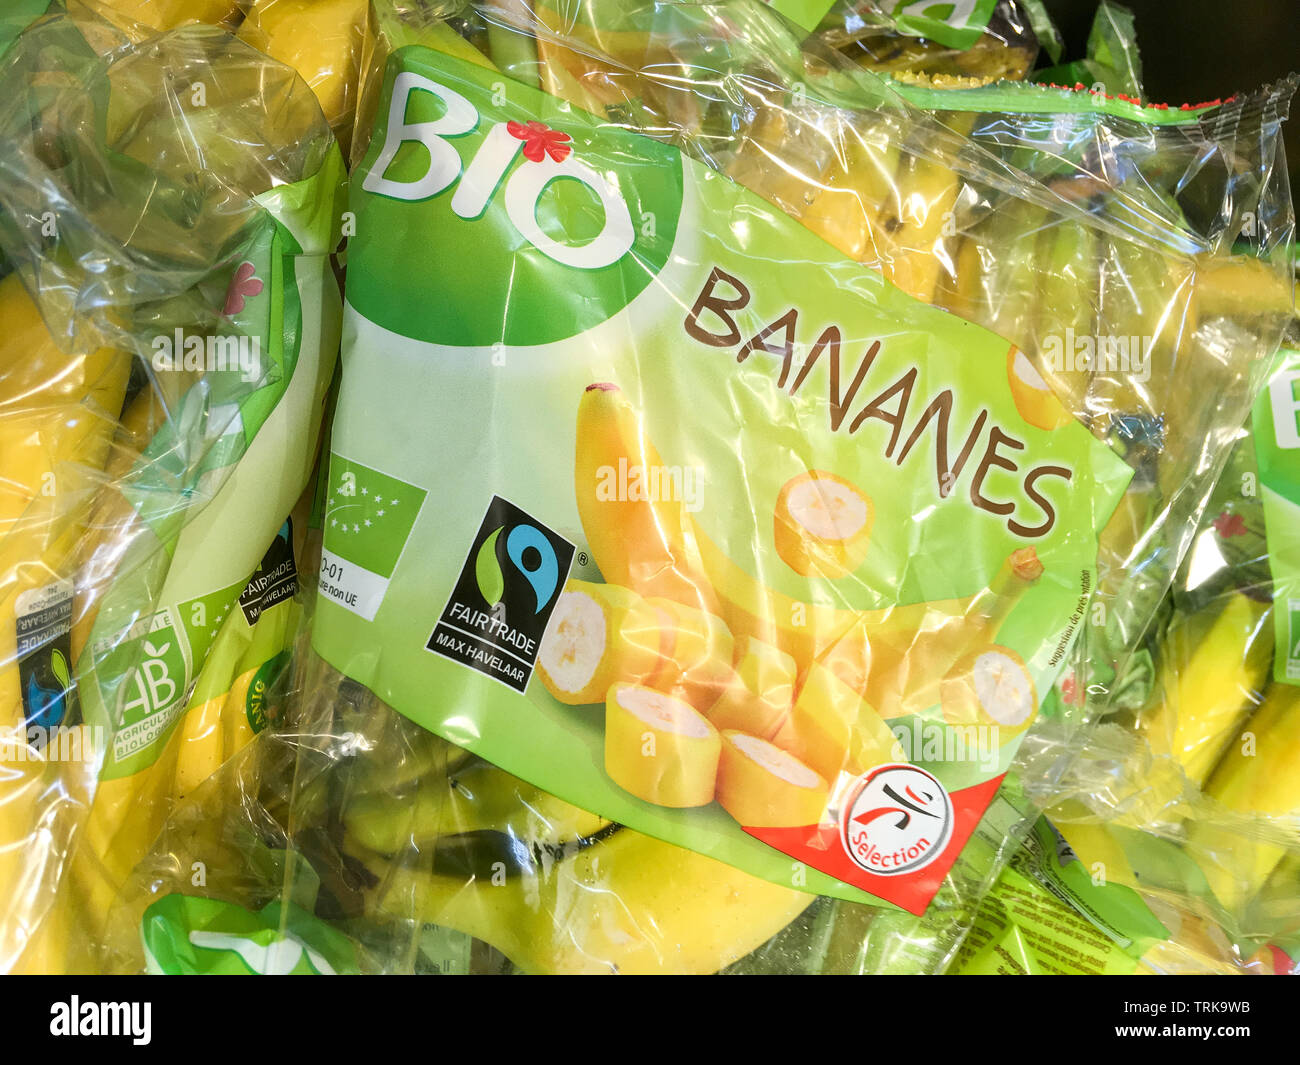 Organic bananas packaged in plastic blister packs, France Stock Photo